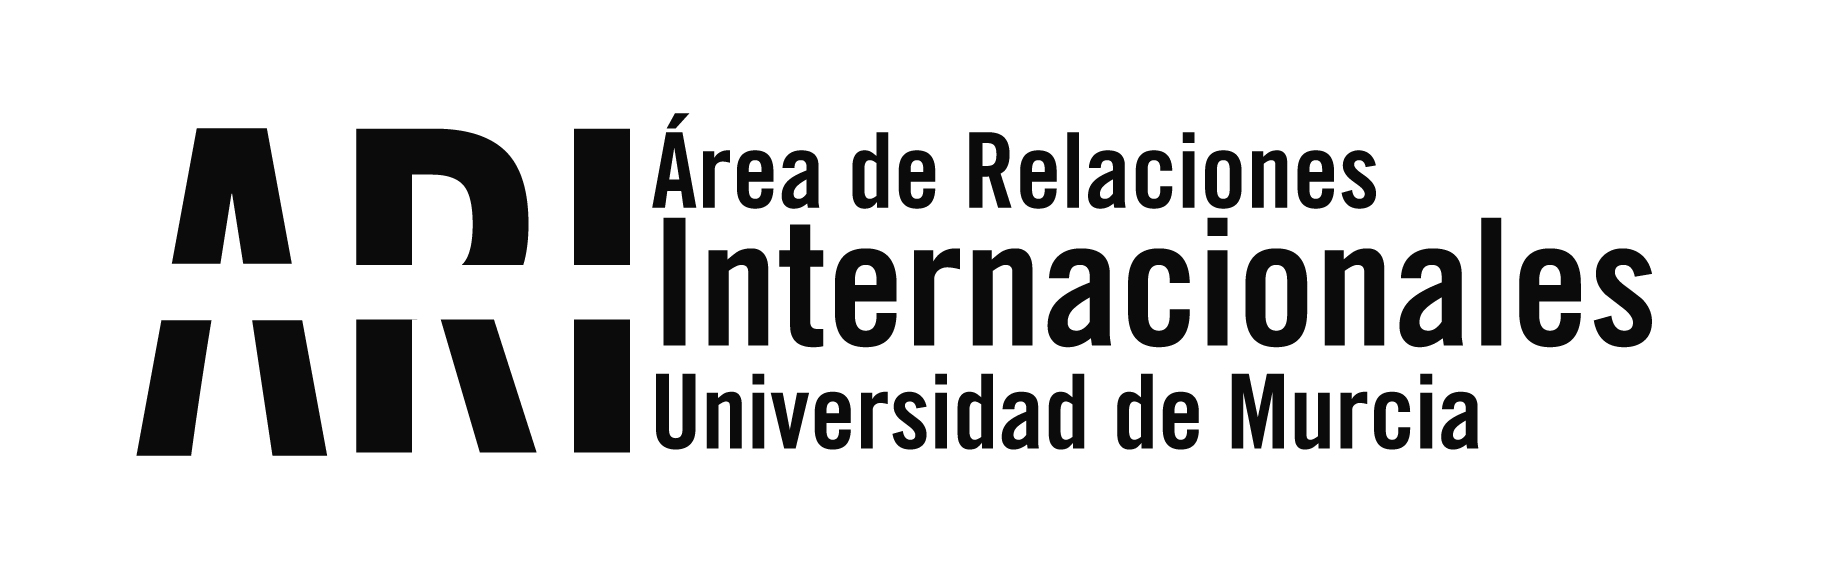 XIII Concurso de Relato Corto de la Universidad de Murcia dotado con 10.000 euros en premios - Área de Relaciones Internacionales